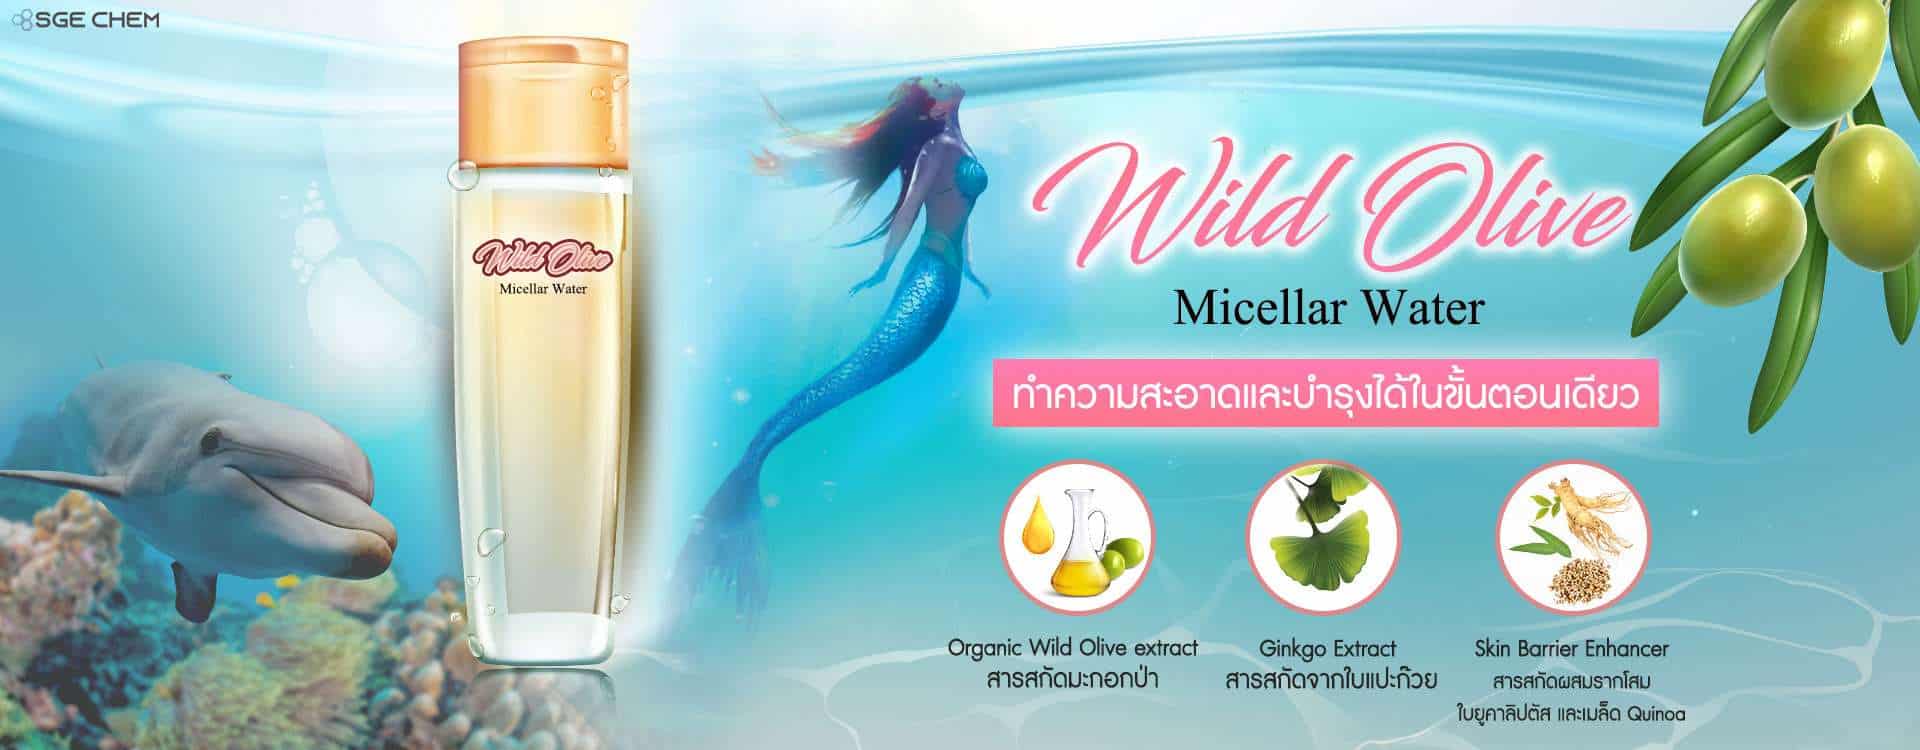 Organic Wild Olive Micellar Water 